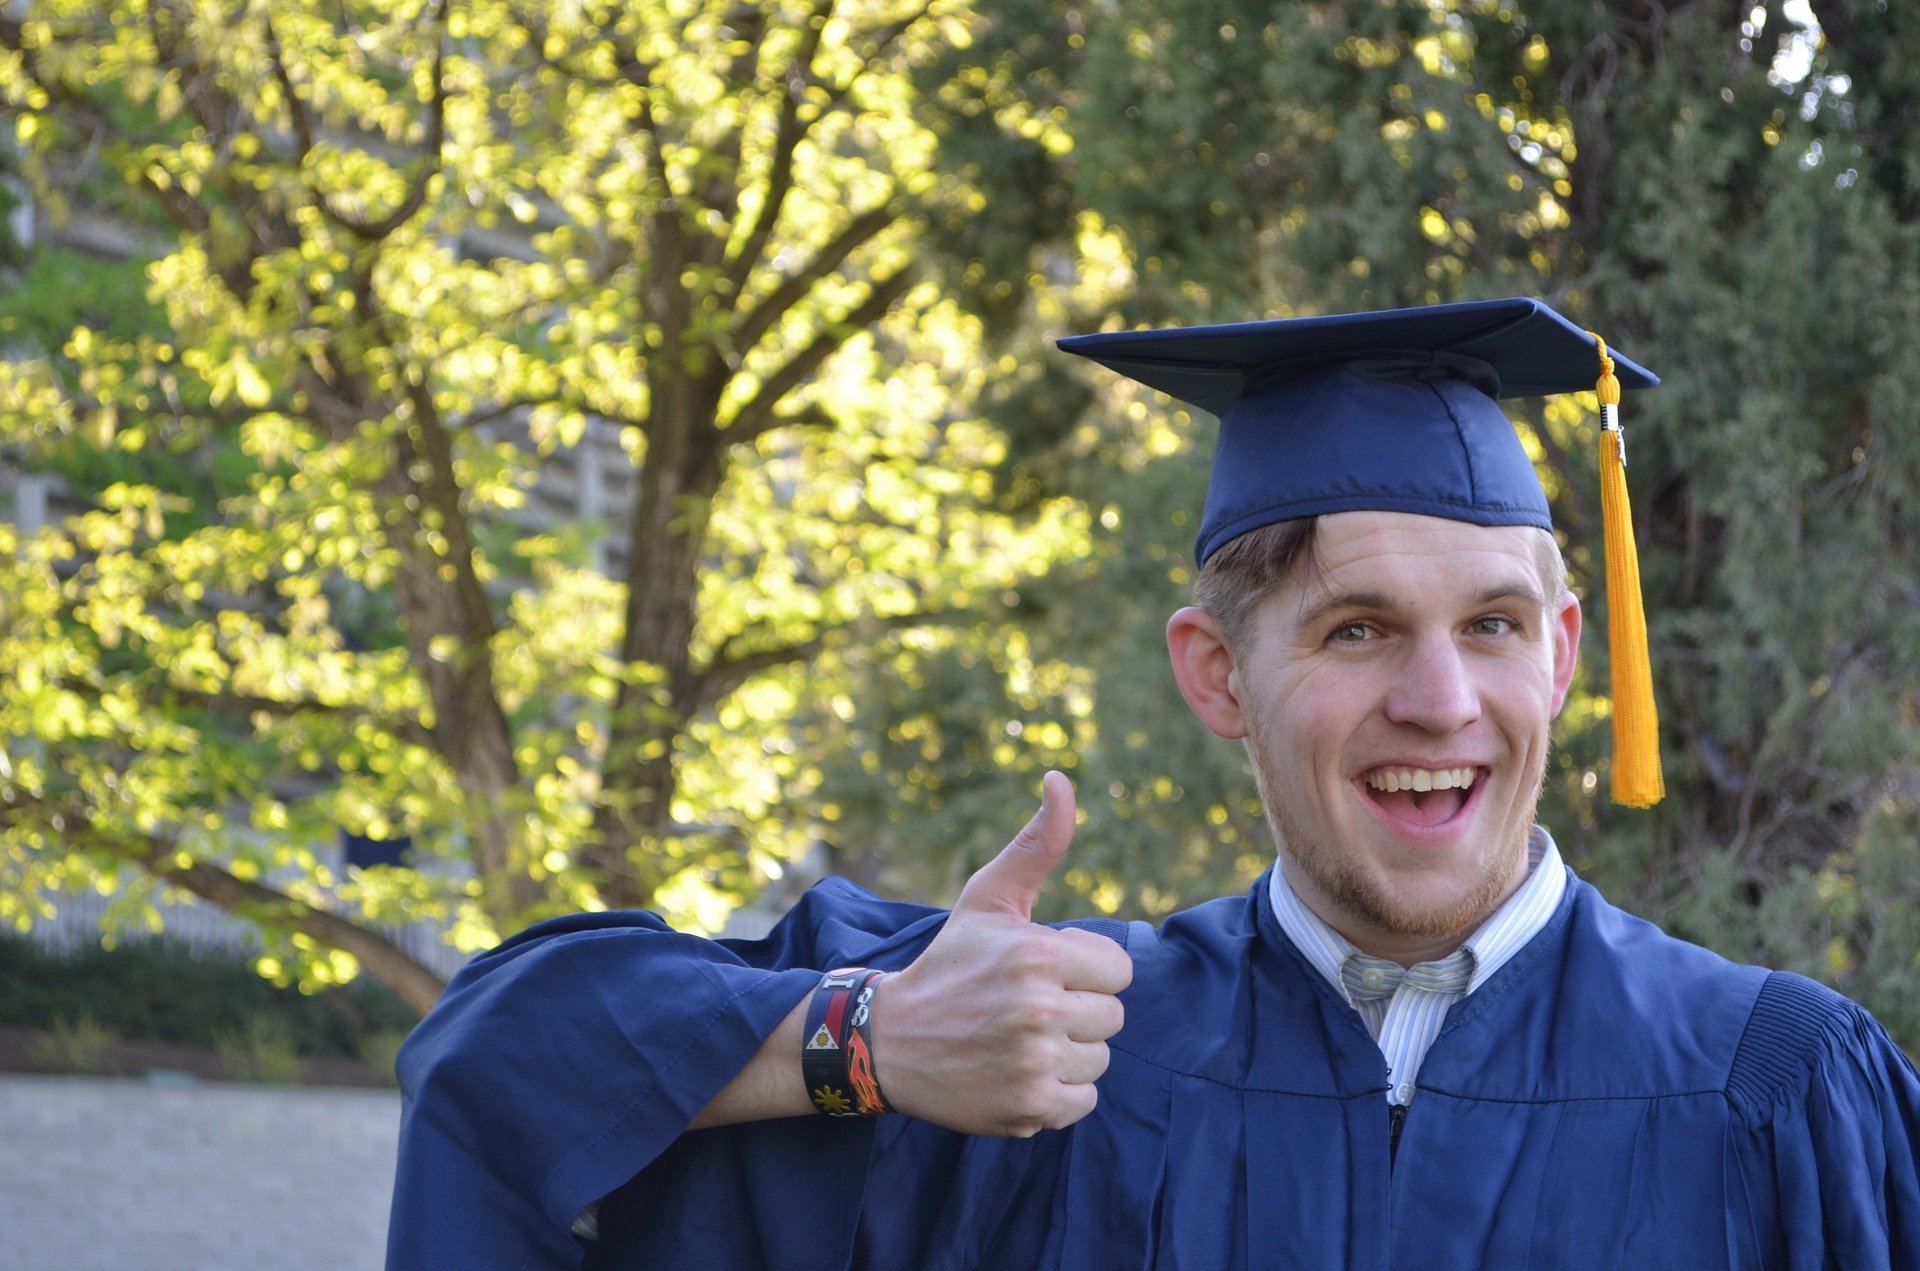 Un hombre muestra un pulgar hacia arriba vistiendo su atuendo de graduación y radiante de orgullo |  Fuente: Pixabay